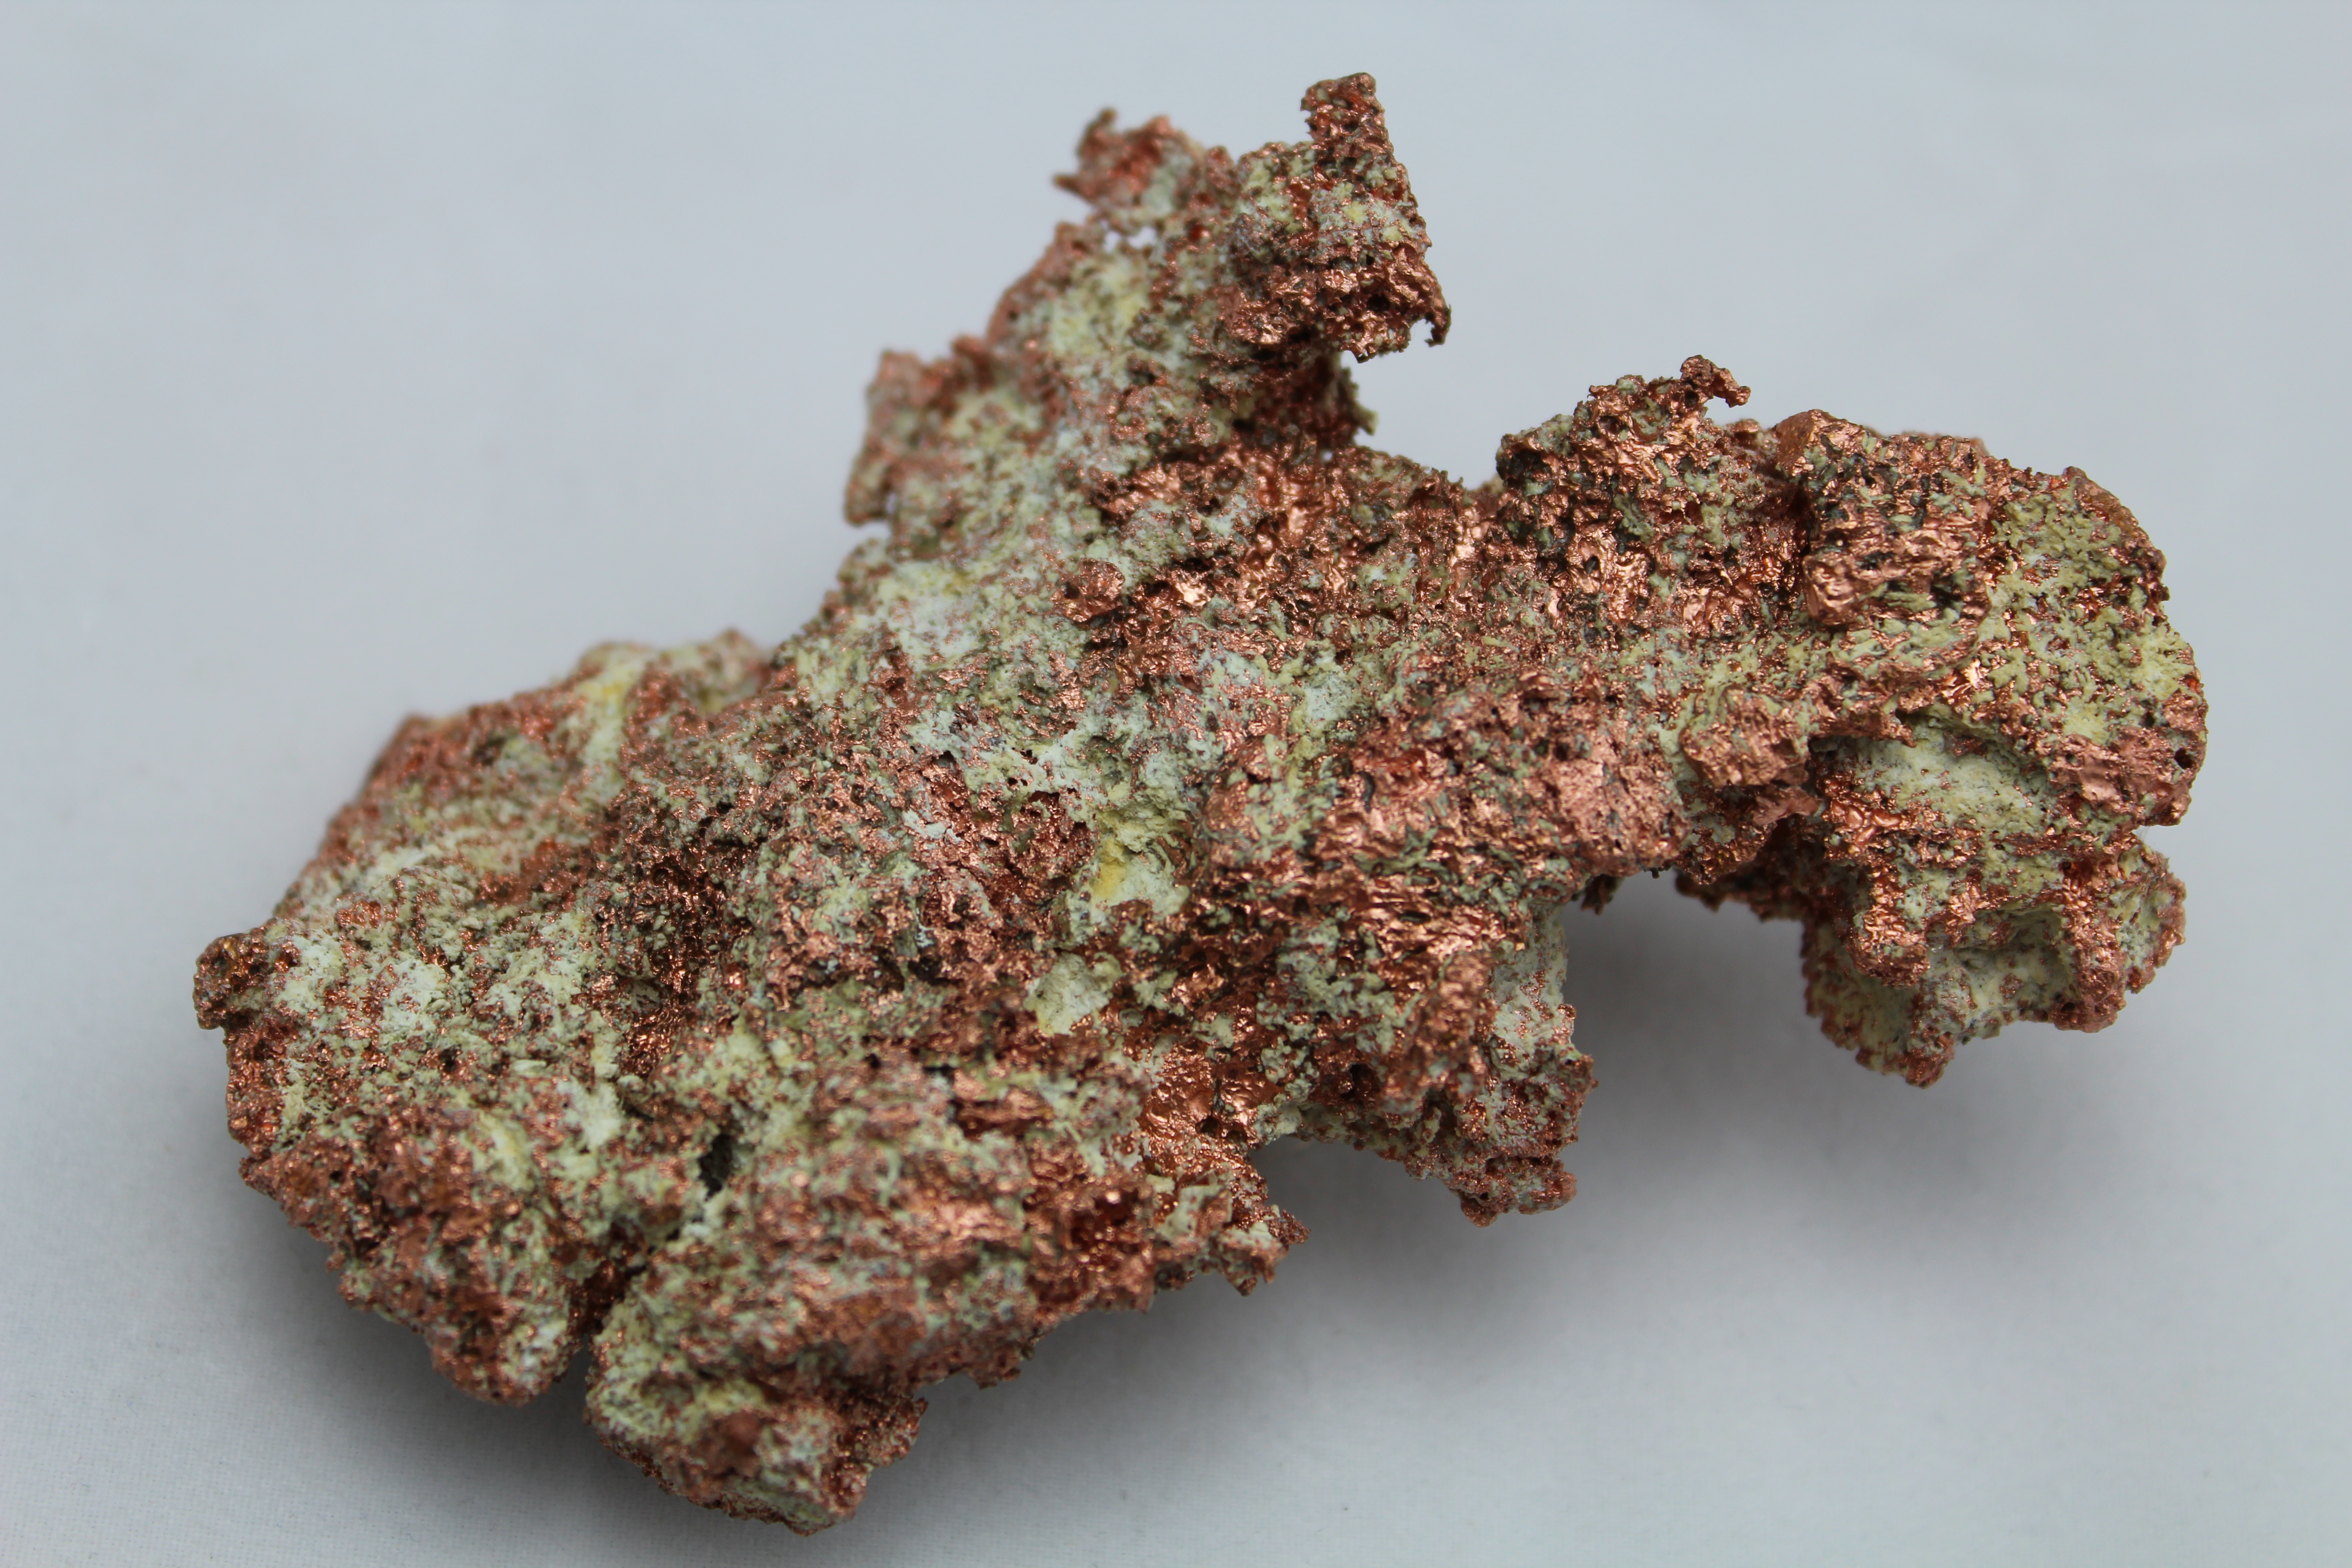 Native Copper Mineral Specimen - Celestial Earth Minerals
